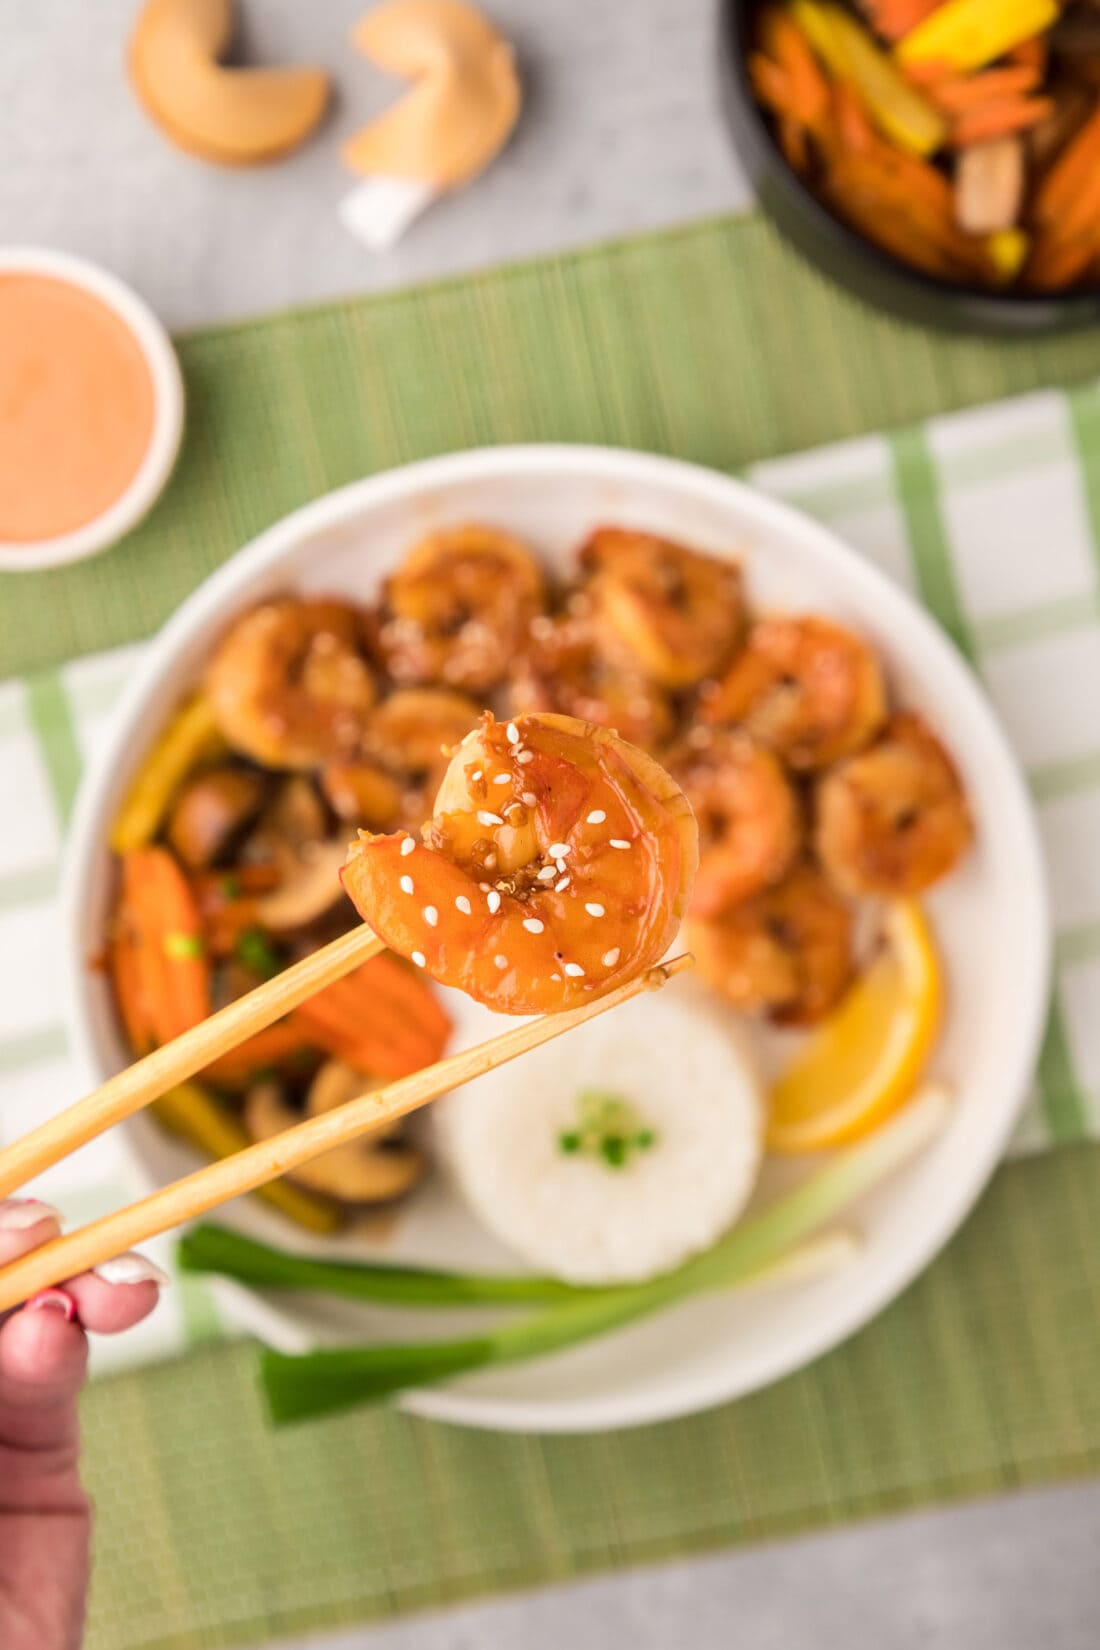 Chopsticks holding up a piece of Hibachi Shrimp